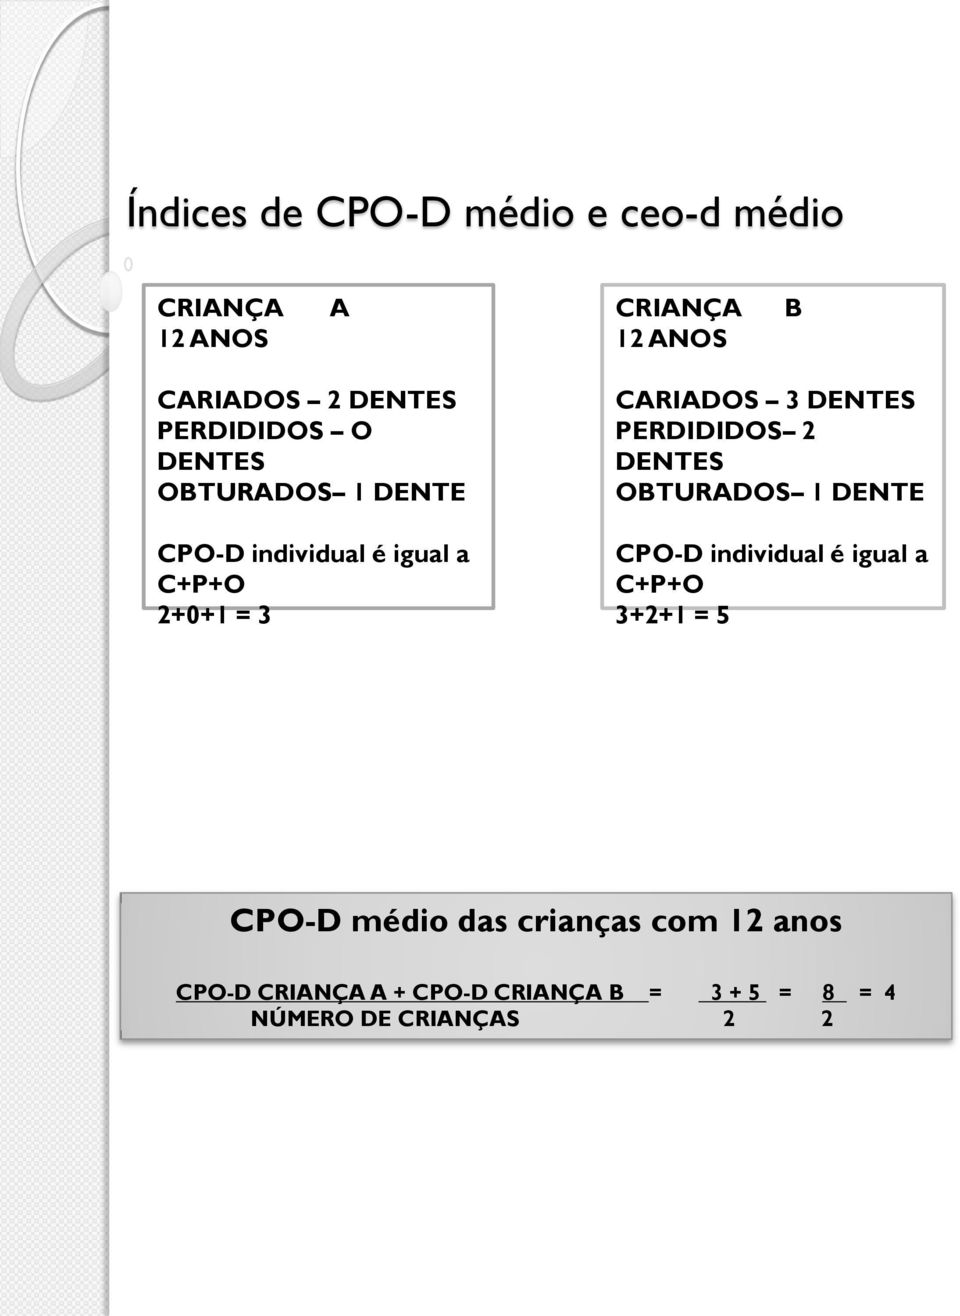 DENTES PERDIDIDOS 2 DENTES OBTURADOS 1 DENTE CPO-D individual é igual a C+P+O 3+2+1 = 5 CPO-D